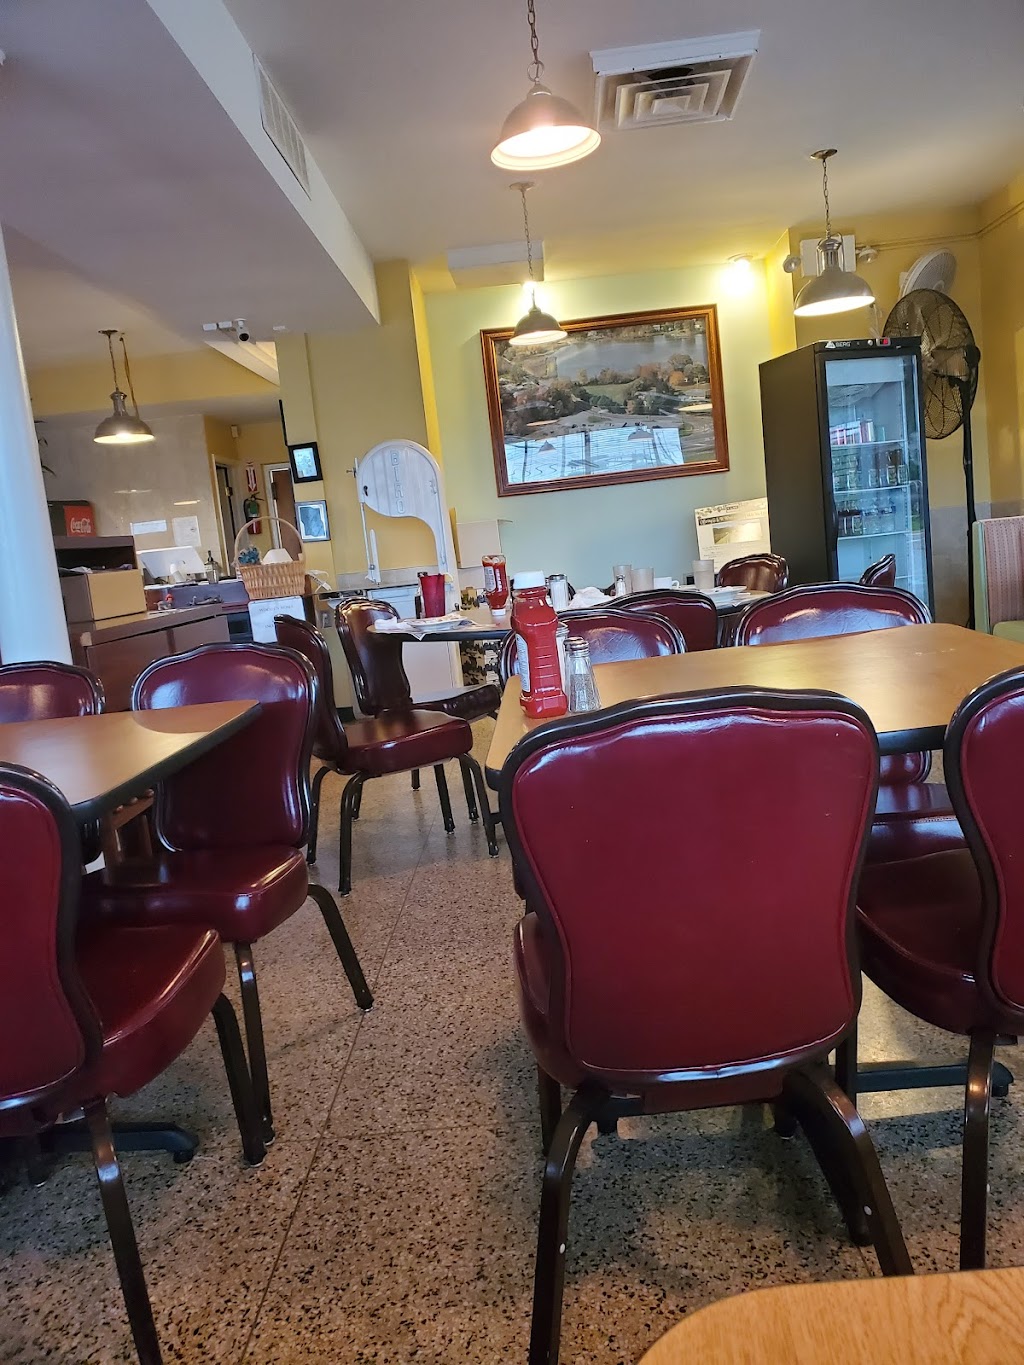 Shamong Diner & Restaurant | 7 Willow Grove Rd, Shamong, NJ 08088 | Phone: (609) 268-1182